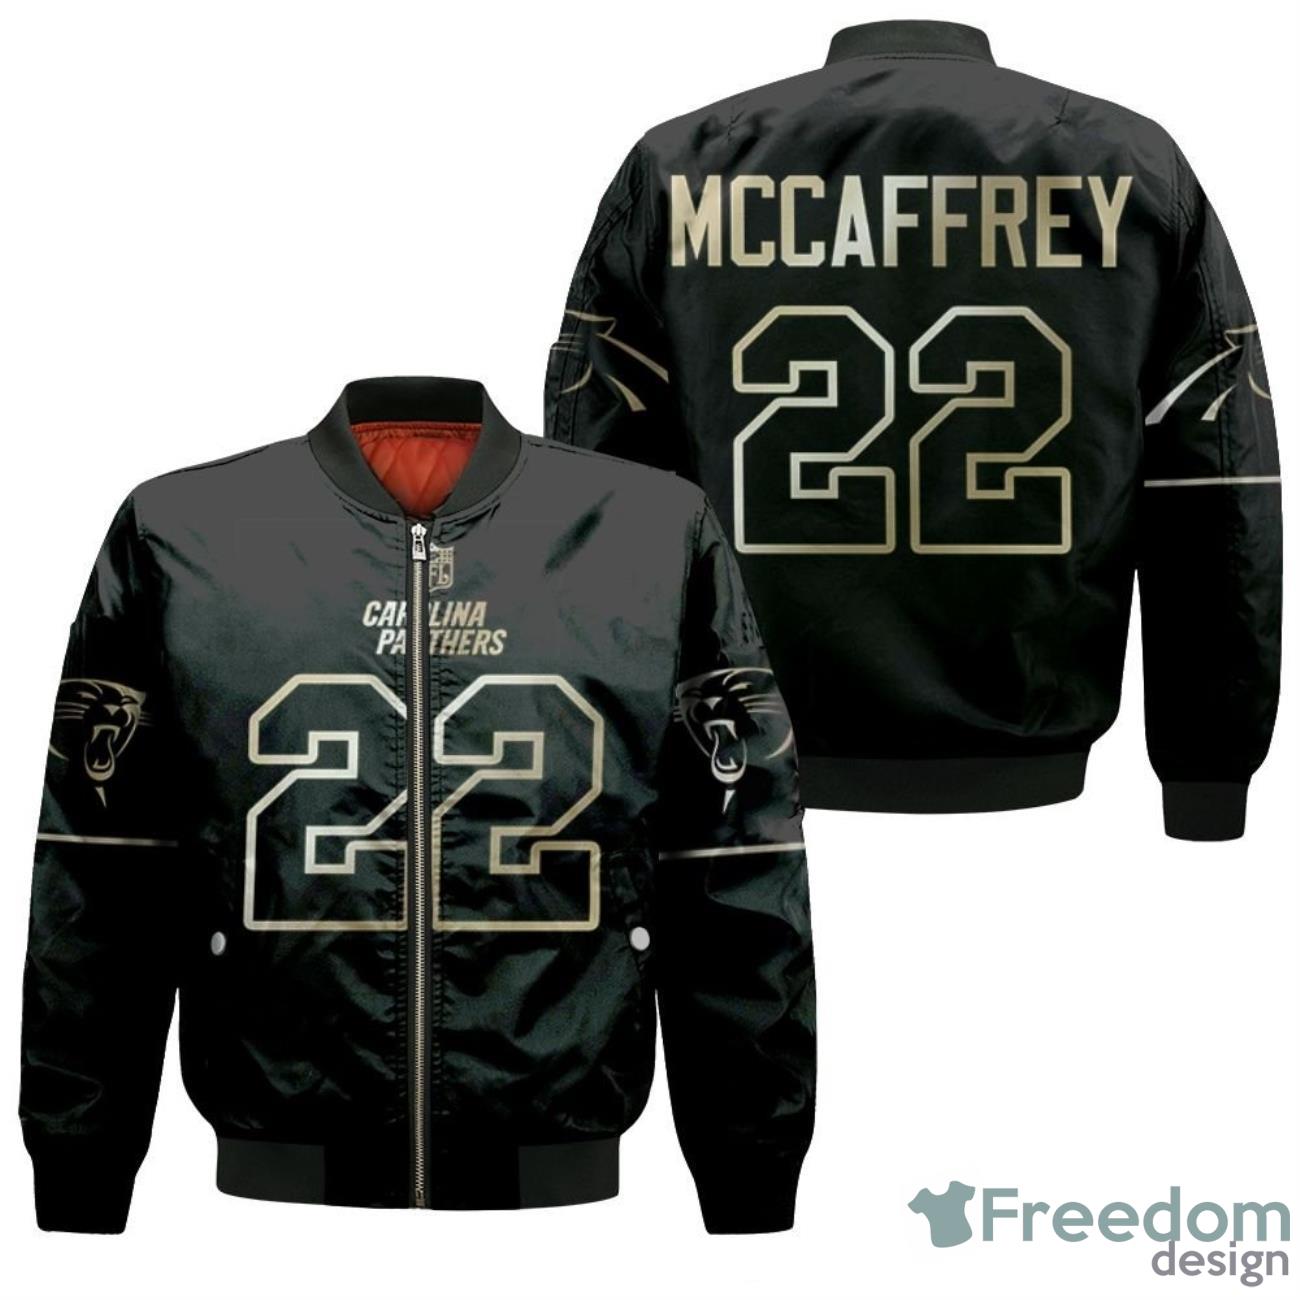 Carolina Panthers Christian Mccaffrey 22 NFL Panthers Fans Bomber Jacket Product Photo 1